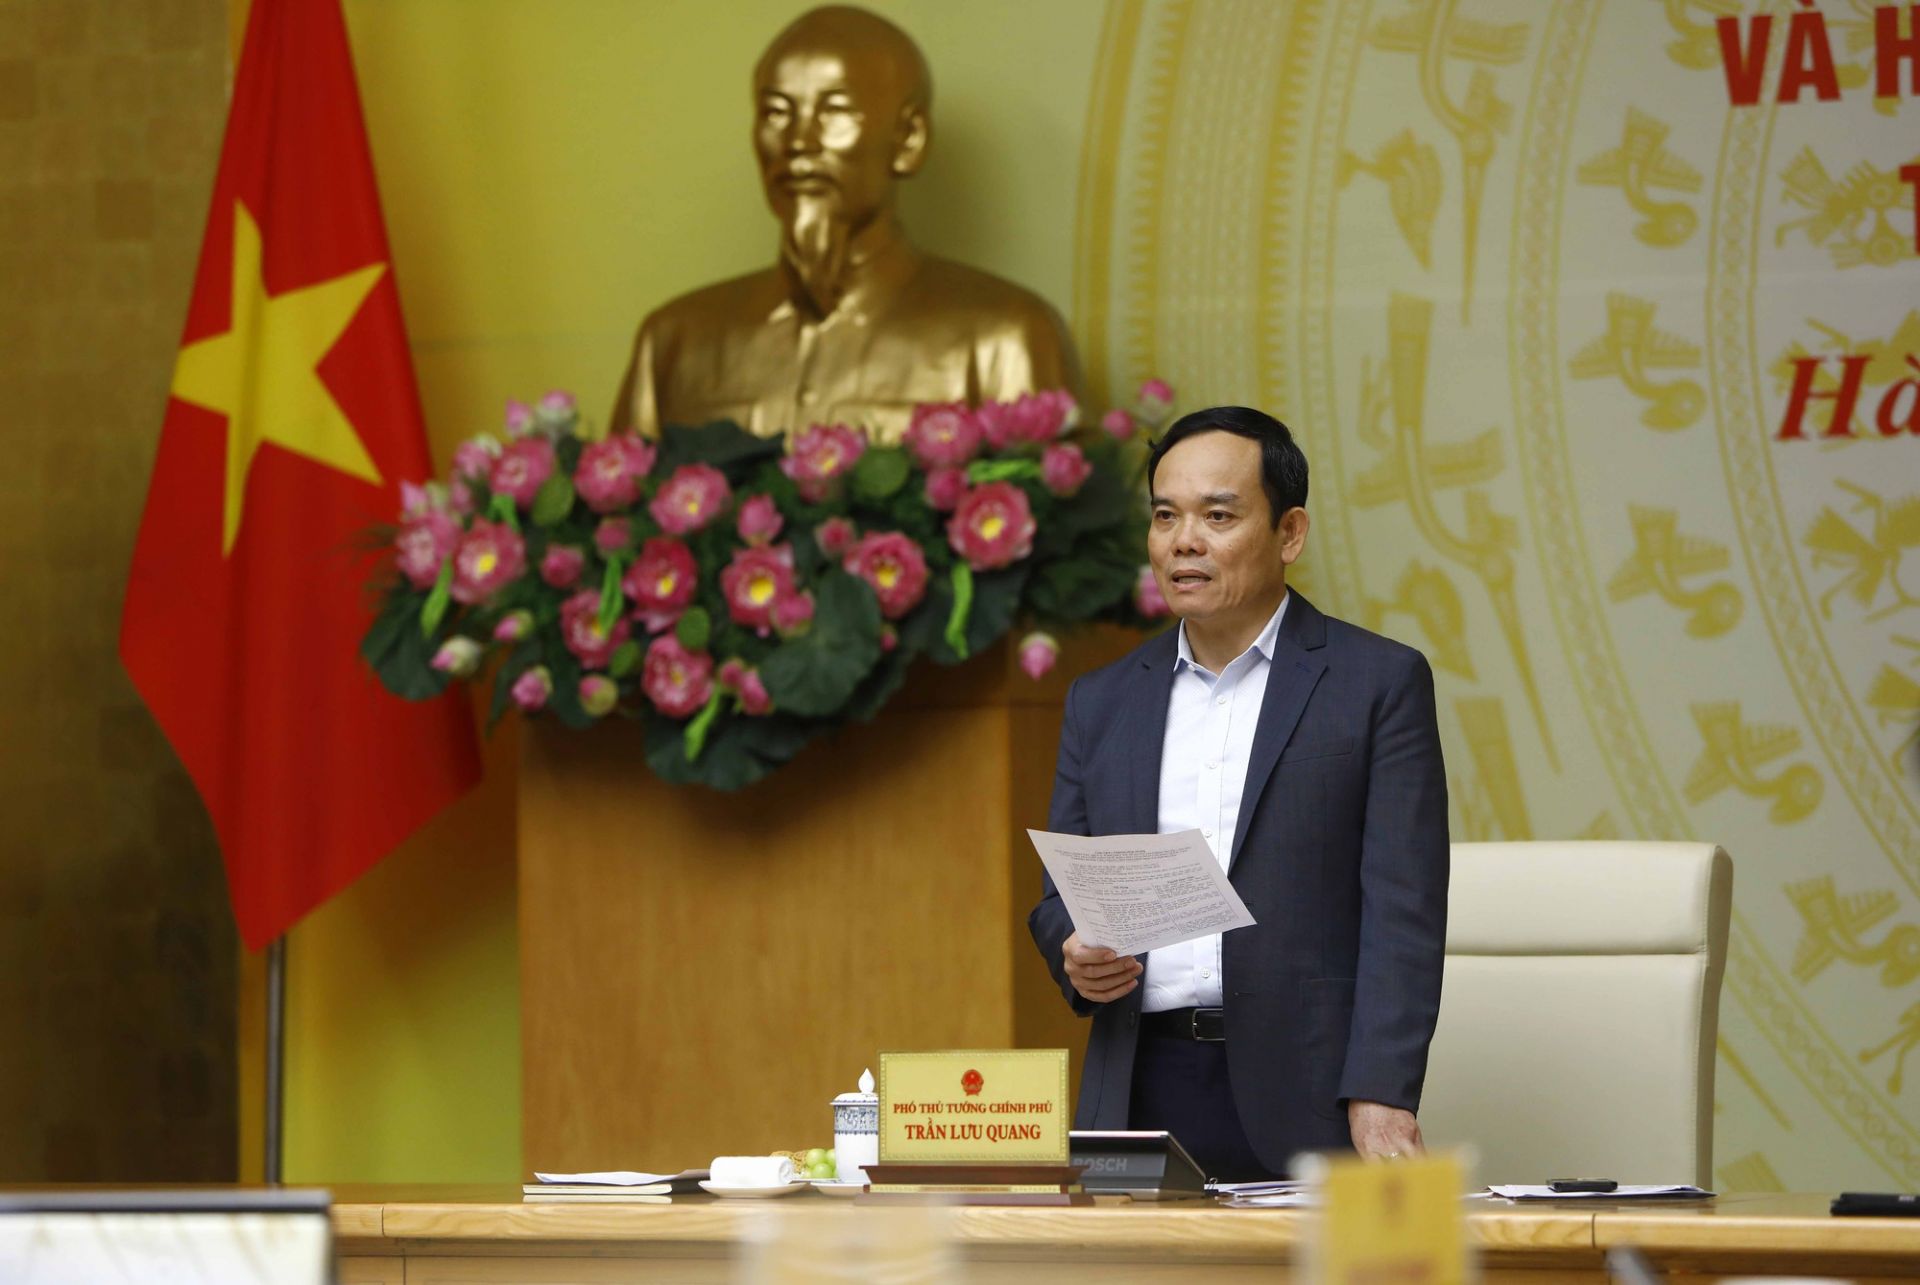 Phó Thủ tướng Trần Lưu Quang ghi nhận, cuối năm 2022 và quý I/2023, công tác chống buôn lậu, gian lận thương mại và hàng giả đã có chuyển biến tích cực, góp phần tăng thu ngân sách, thúc đẩy sản xuất kinh doanh, bảo đảm an ninh trật tự, an toàn xã hội